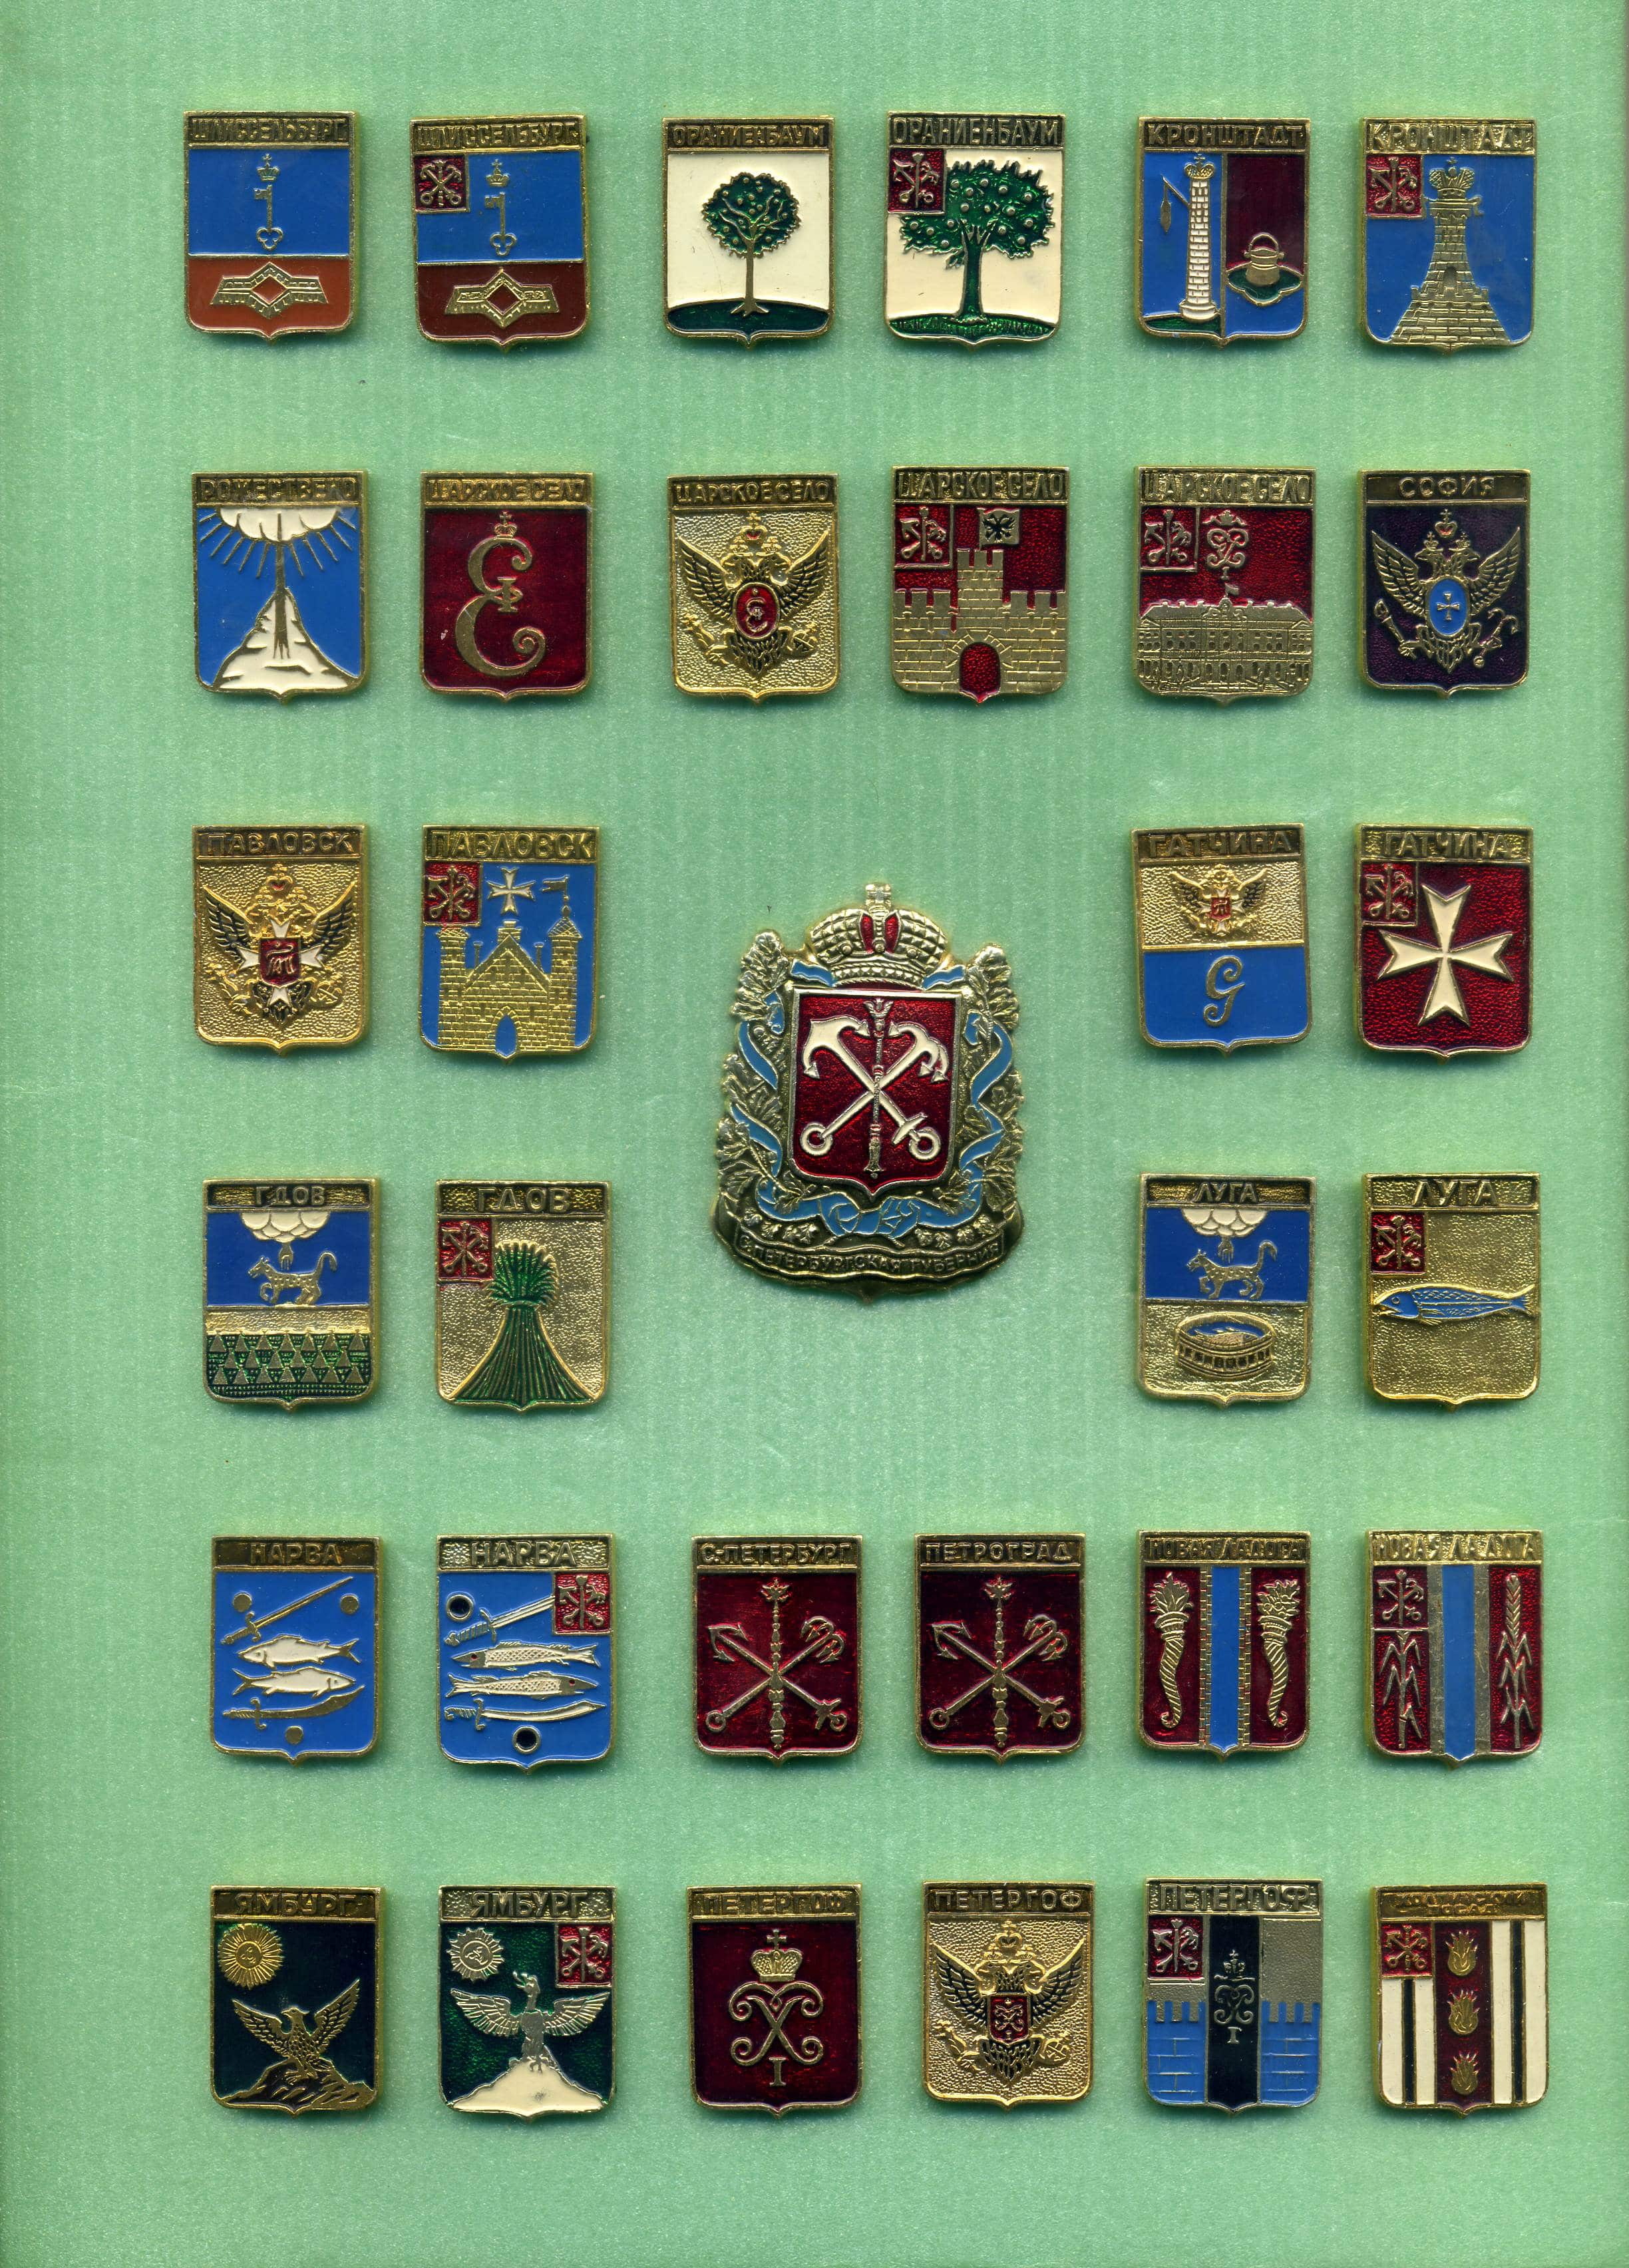 гербы городов вологодской области фото